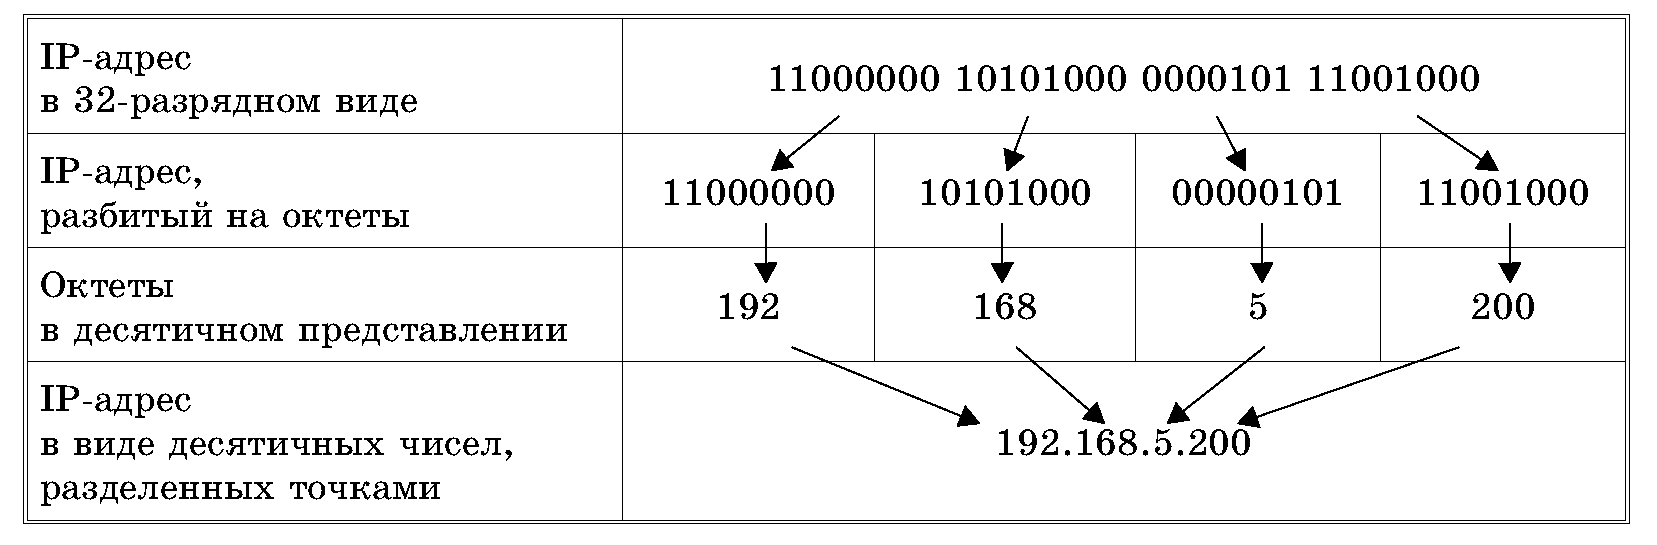 Ip адреса банковские. Структура IP адреса. Как записывается IP-адрес компьютера?. Из чего состоит IP адресации. Из чего состоит IP адрес компьютера.